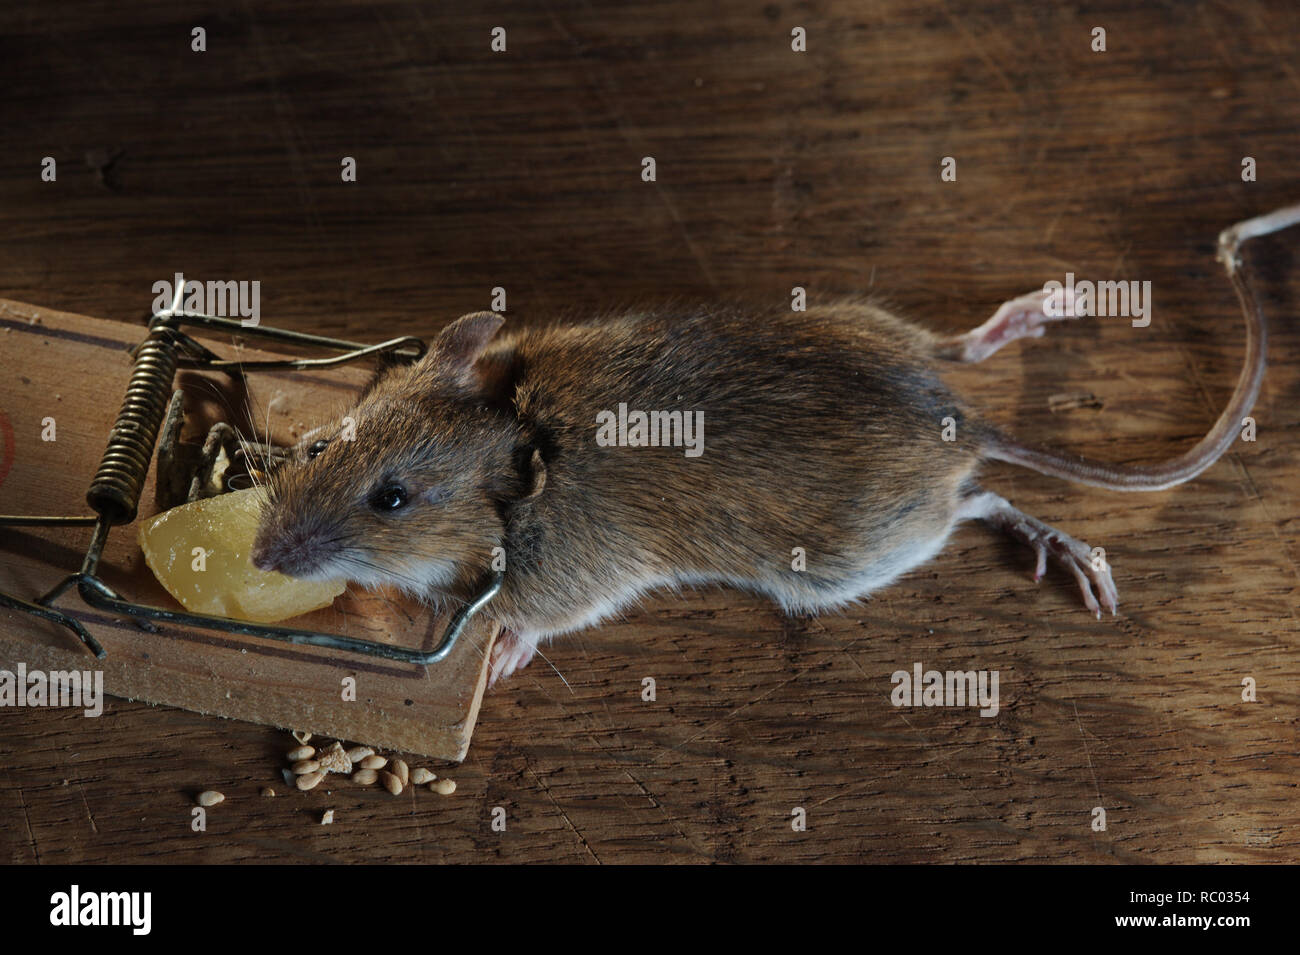 Maus in der Mausefalle gefangen | ratón atrapado en una trampa de ratón Foto de stock